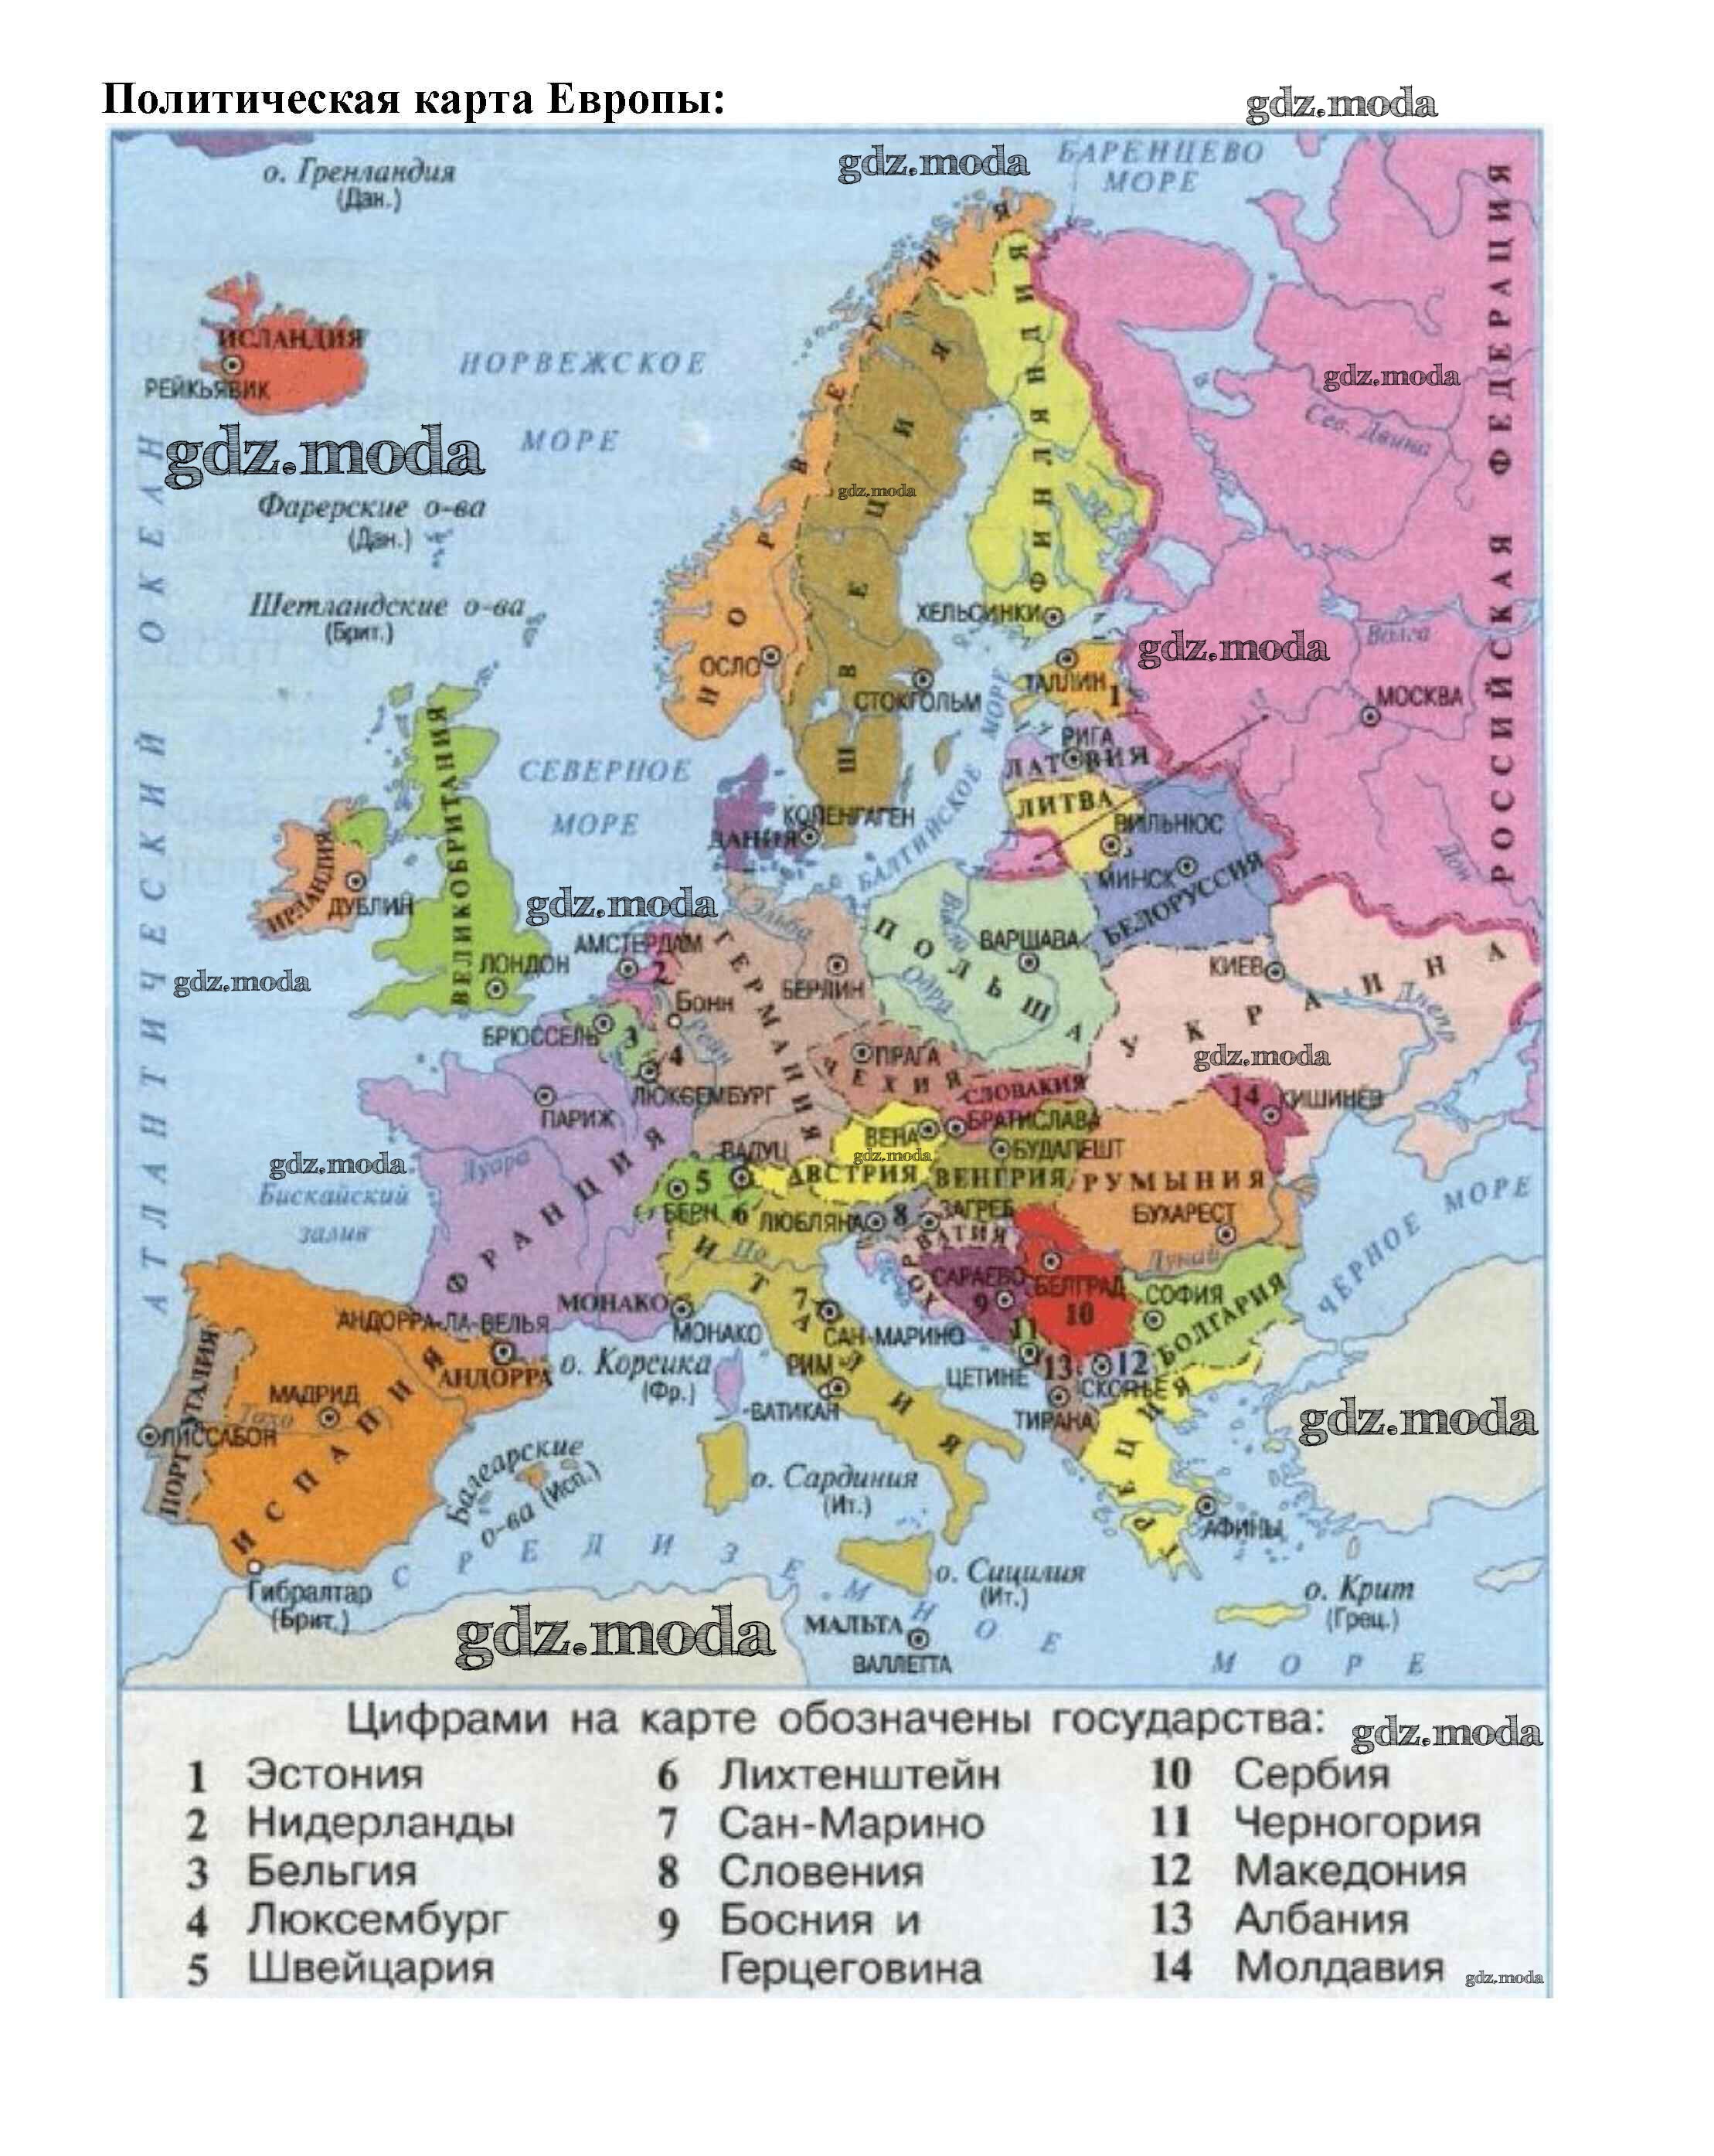 Зарубежная европа находится. Карта зарубежной Европы 11 класс атлас. Политическая карта зарубежной Европы 11 класс. Карта зарубежной Европы с границами государств. Зарубежная Европа атлас политическая.